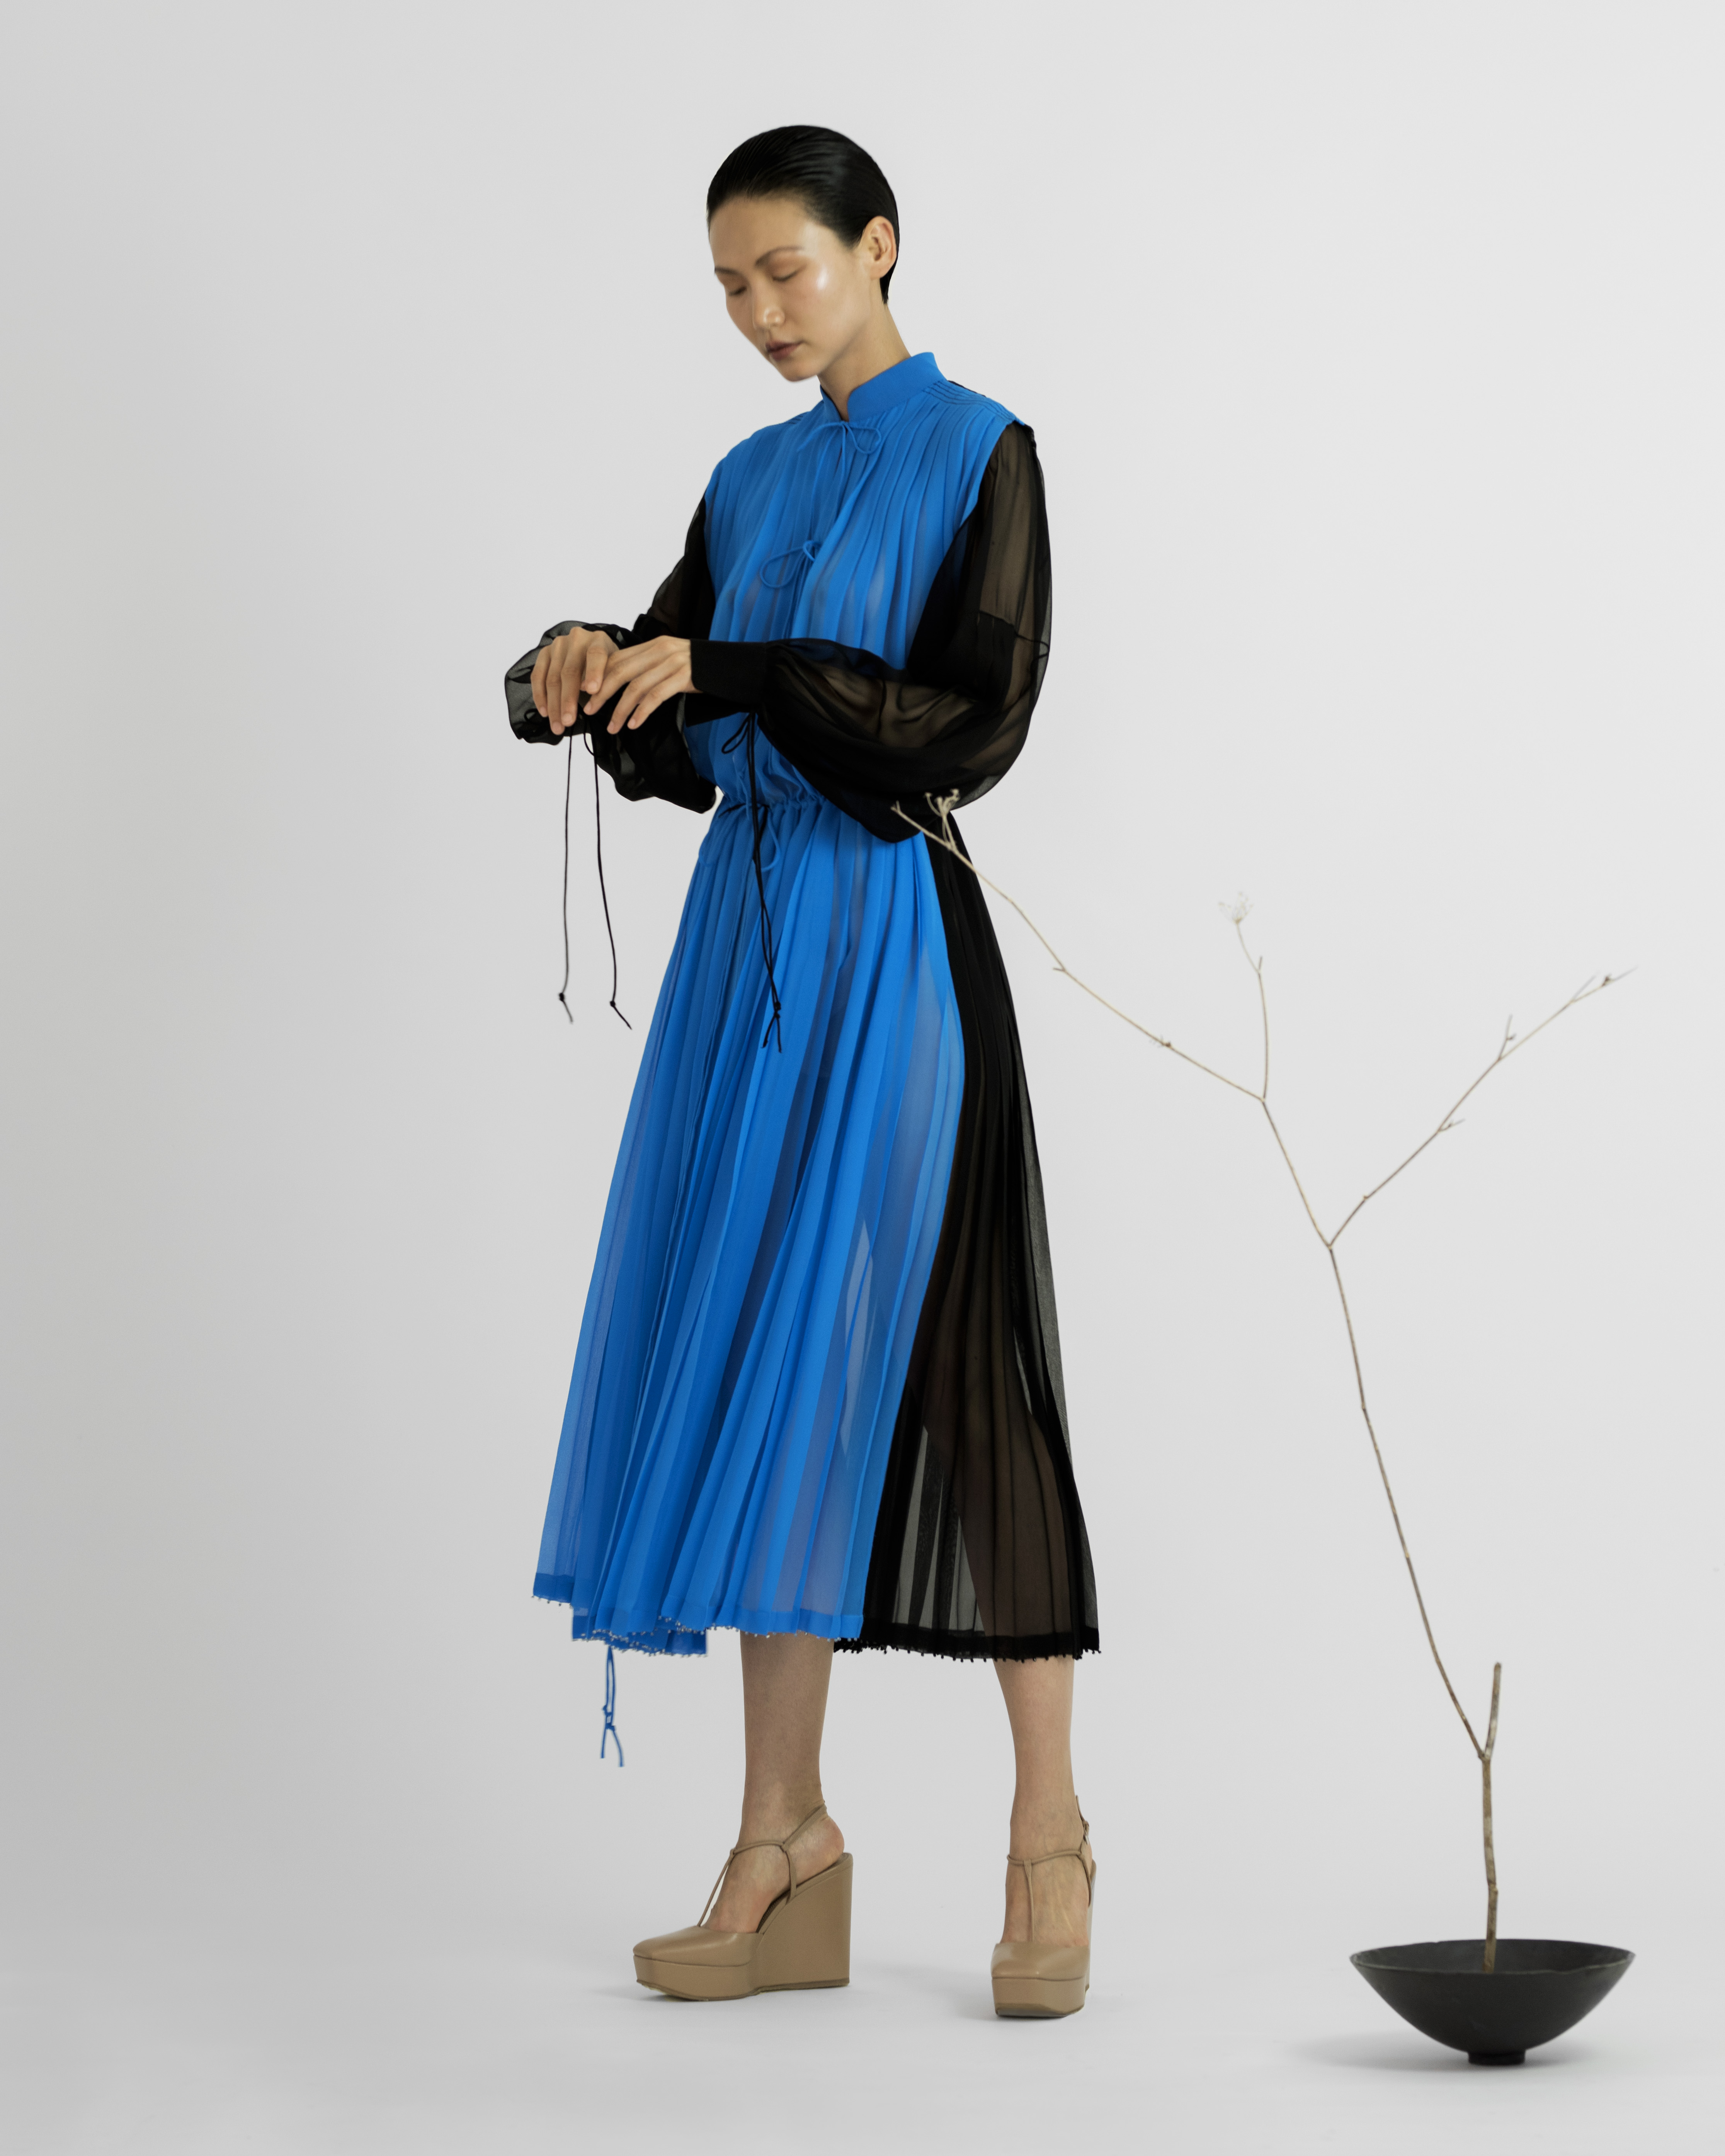 Το έργο του Cecil Touchon εμπνέει την πιο αιθέρια συλλογή φορεμάτων που θα δεις φέτος